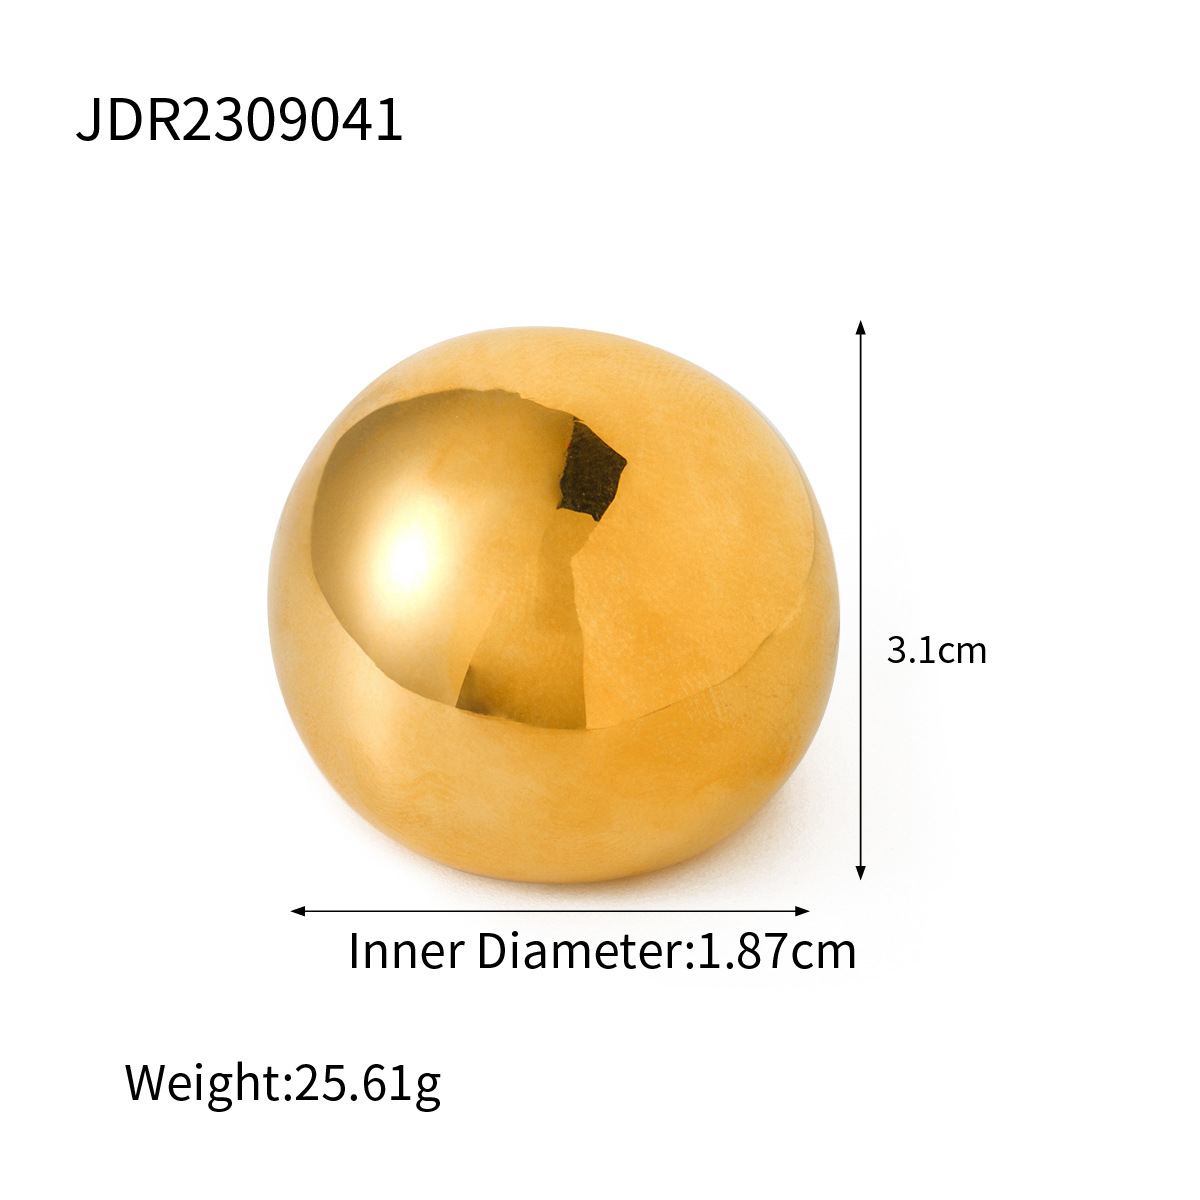 JDR2309041 US Size #6